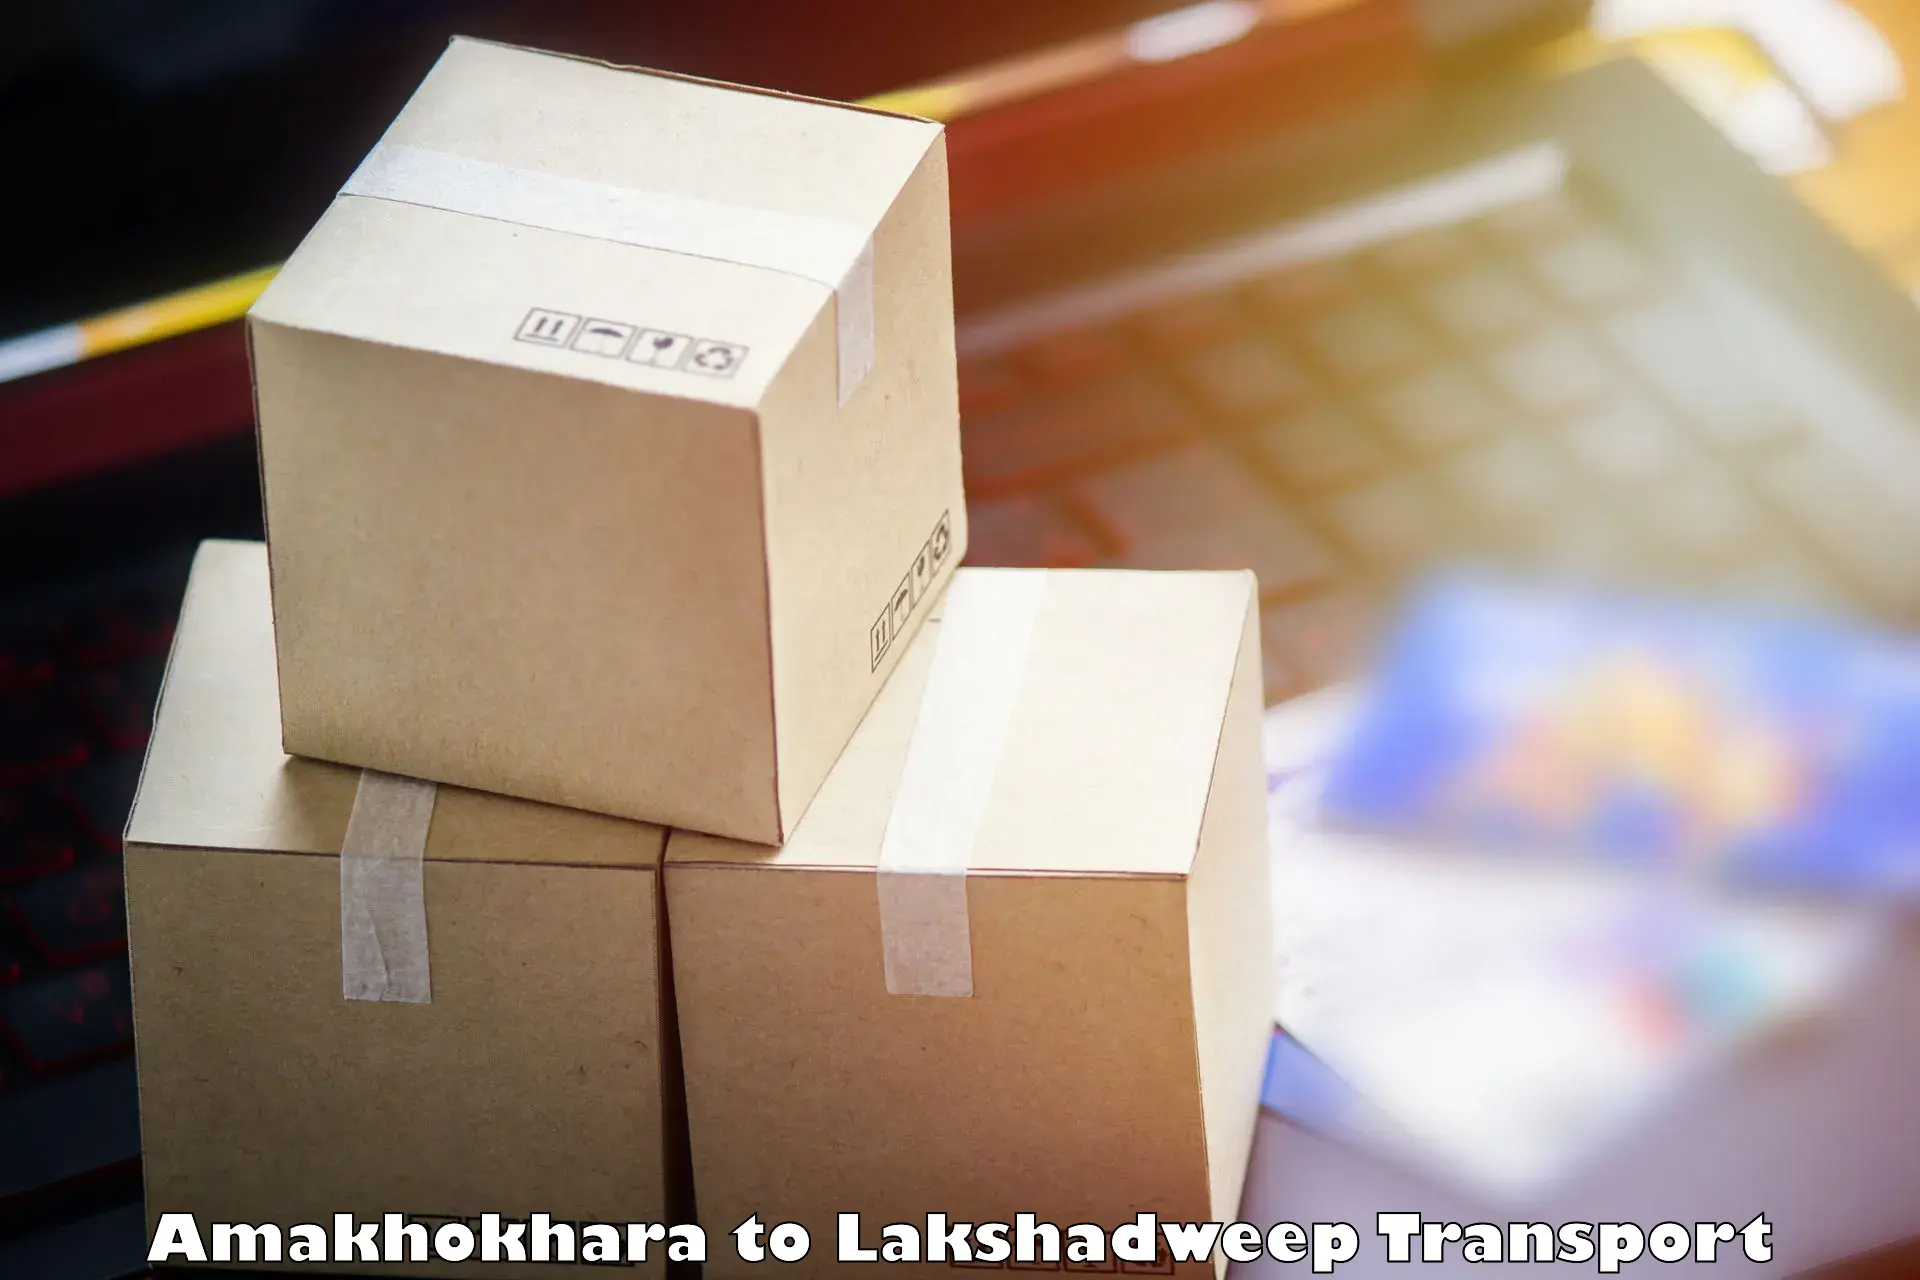 Land transport services Amakhokhara to Lakshadweep